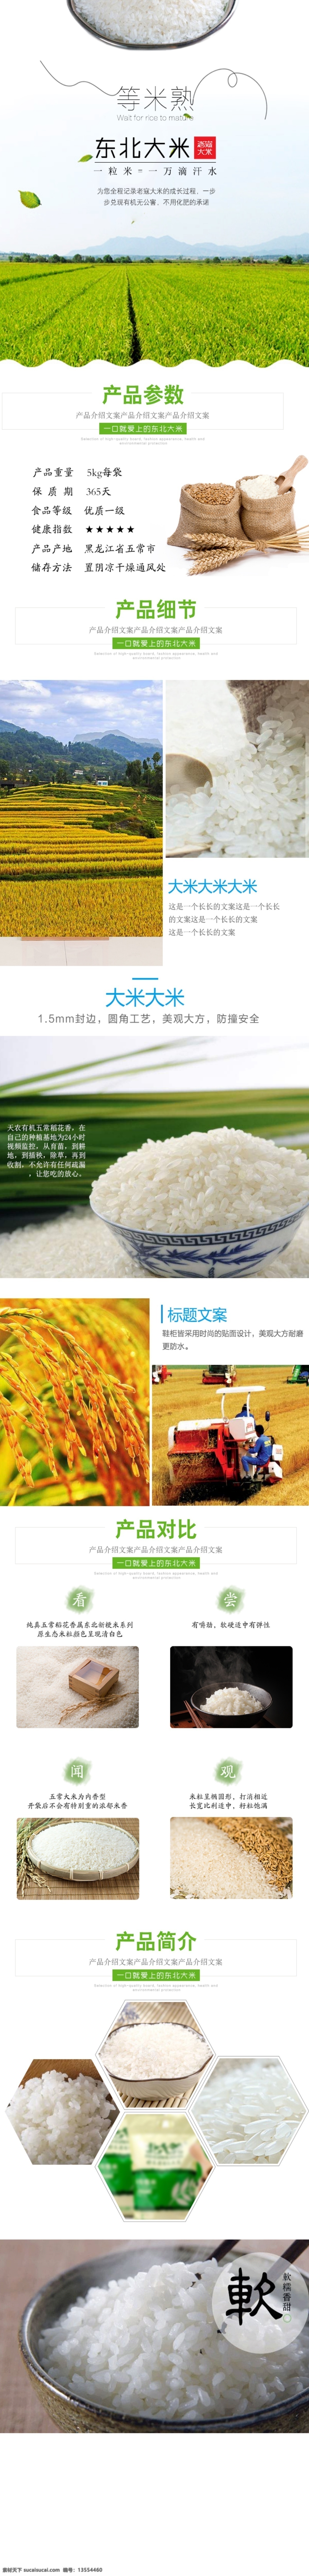 东北 优质 大米 淘宝 电商 详情 页 描述 模板 源文件 稻米 皆辛苦 粒粒 米 米面 优势 原生态